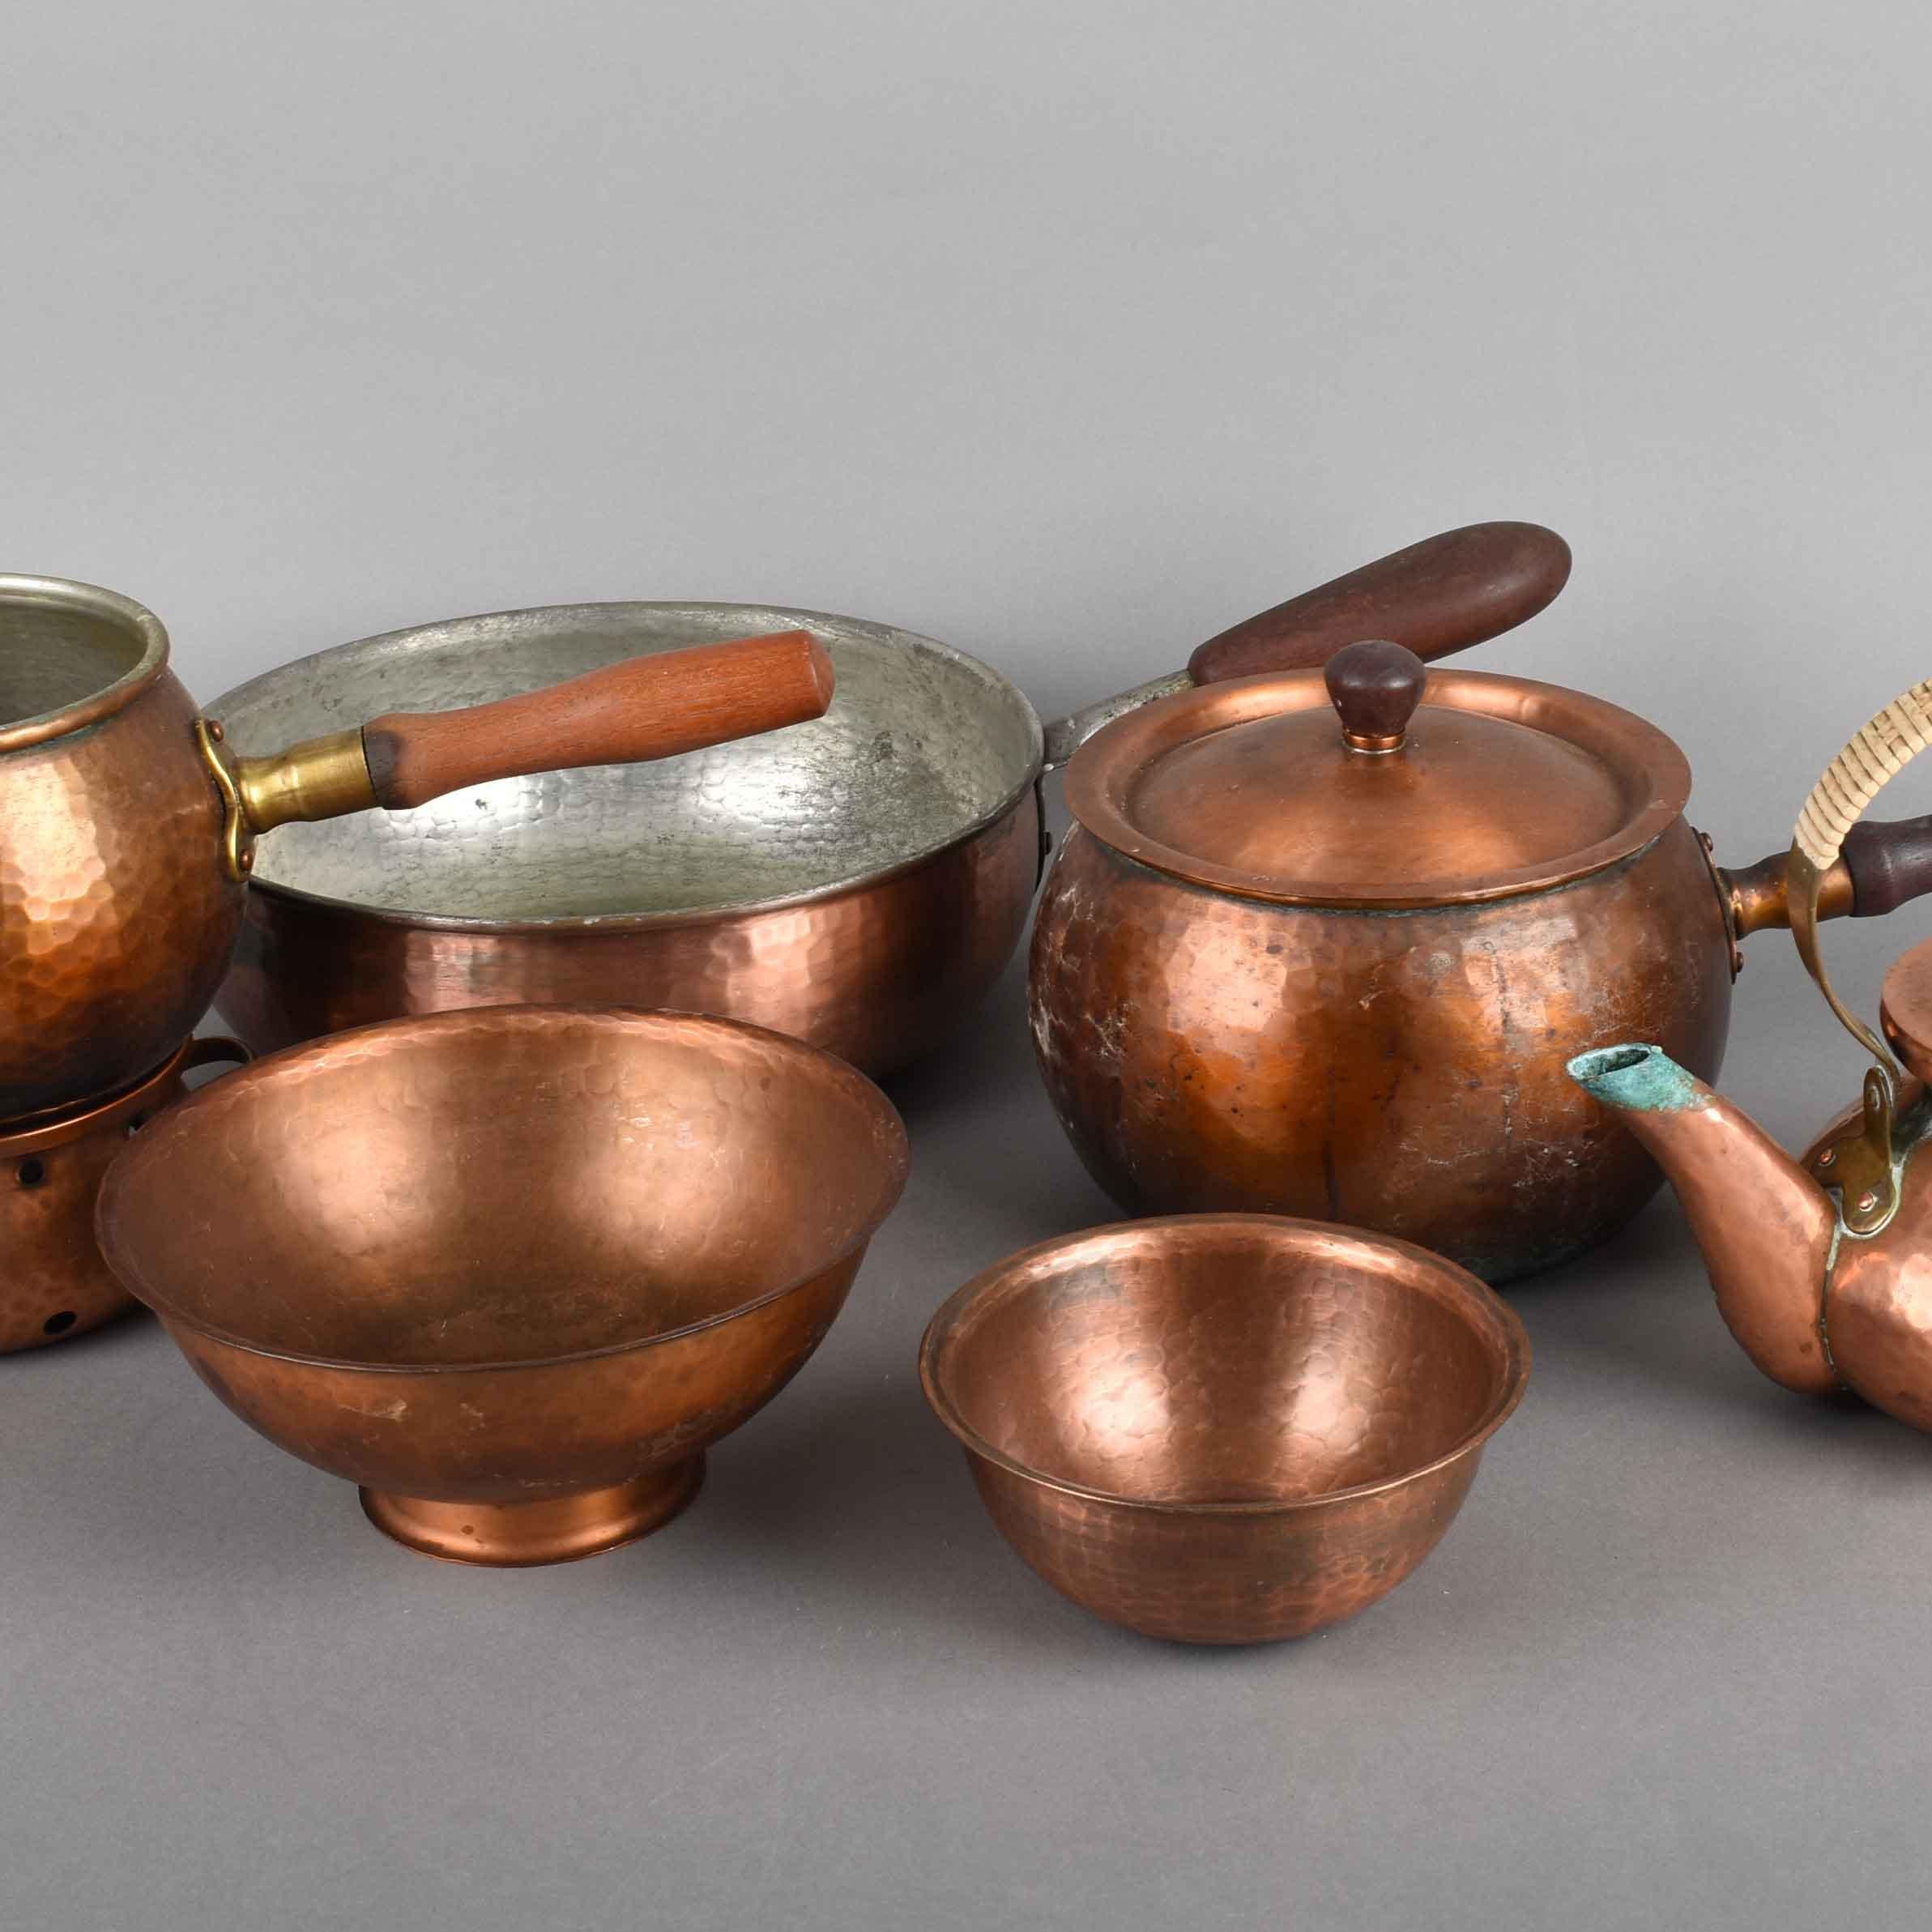 L'ensemble en cuivre d'Eugen Zint est un groupe d'objets décoratifs originaux réalisés dans les années 1950.

Cuivre original. Le groupe comprend sept pièces : deux bols de différentes tailles, trois pots, une théière et une bouilloire.

Tous